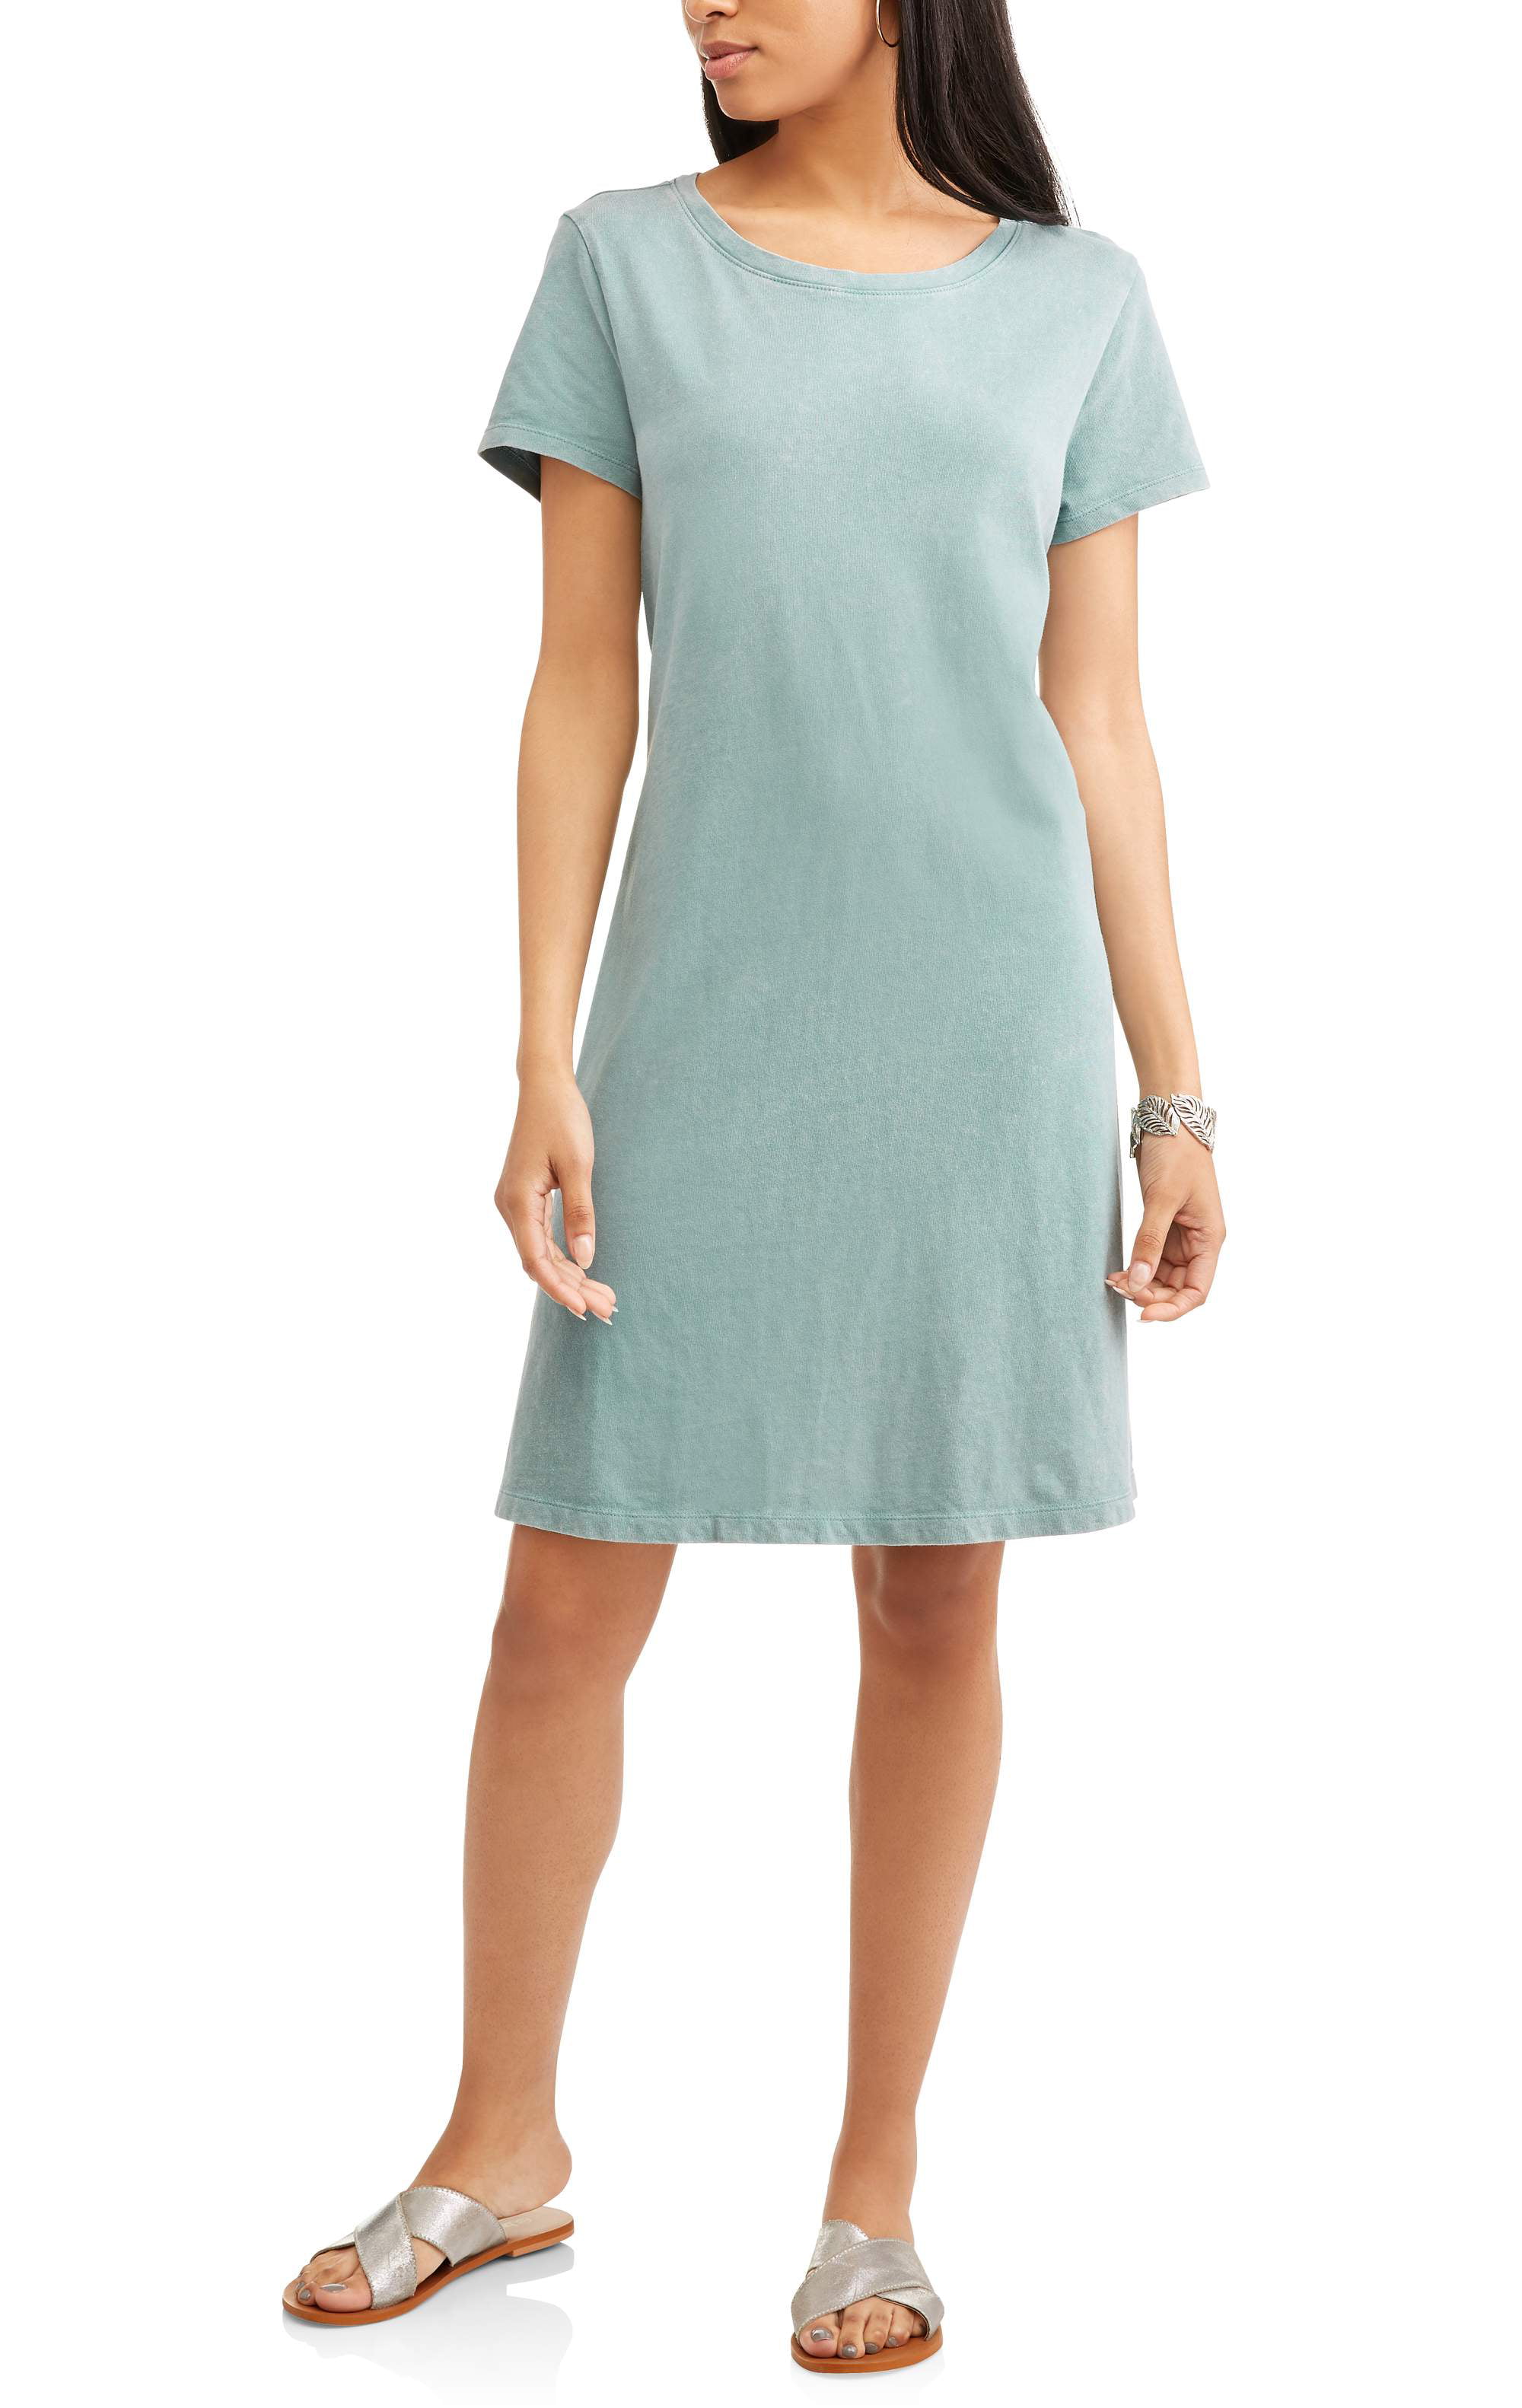 Tru Women's Essential T-shirt Dress ...